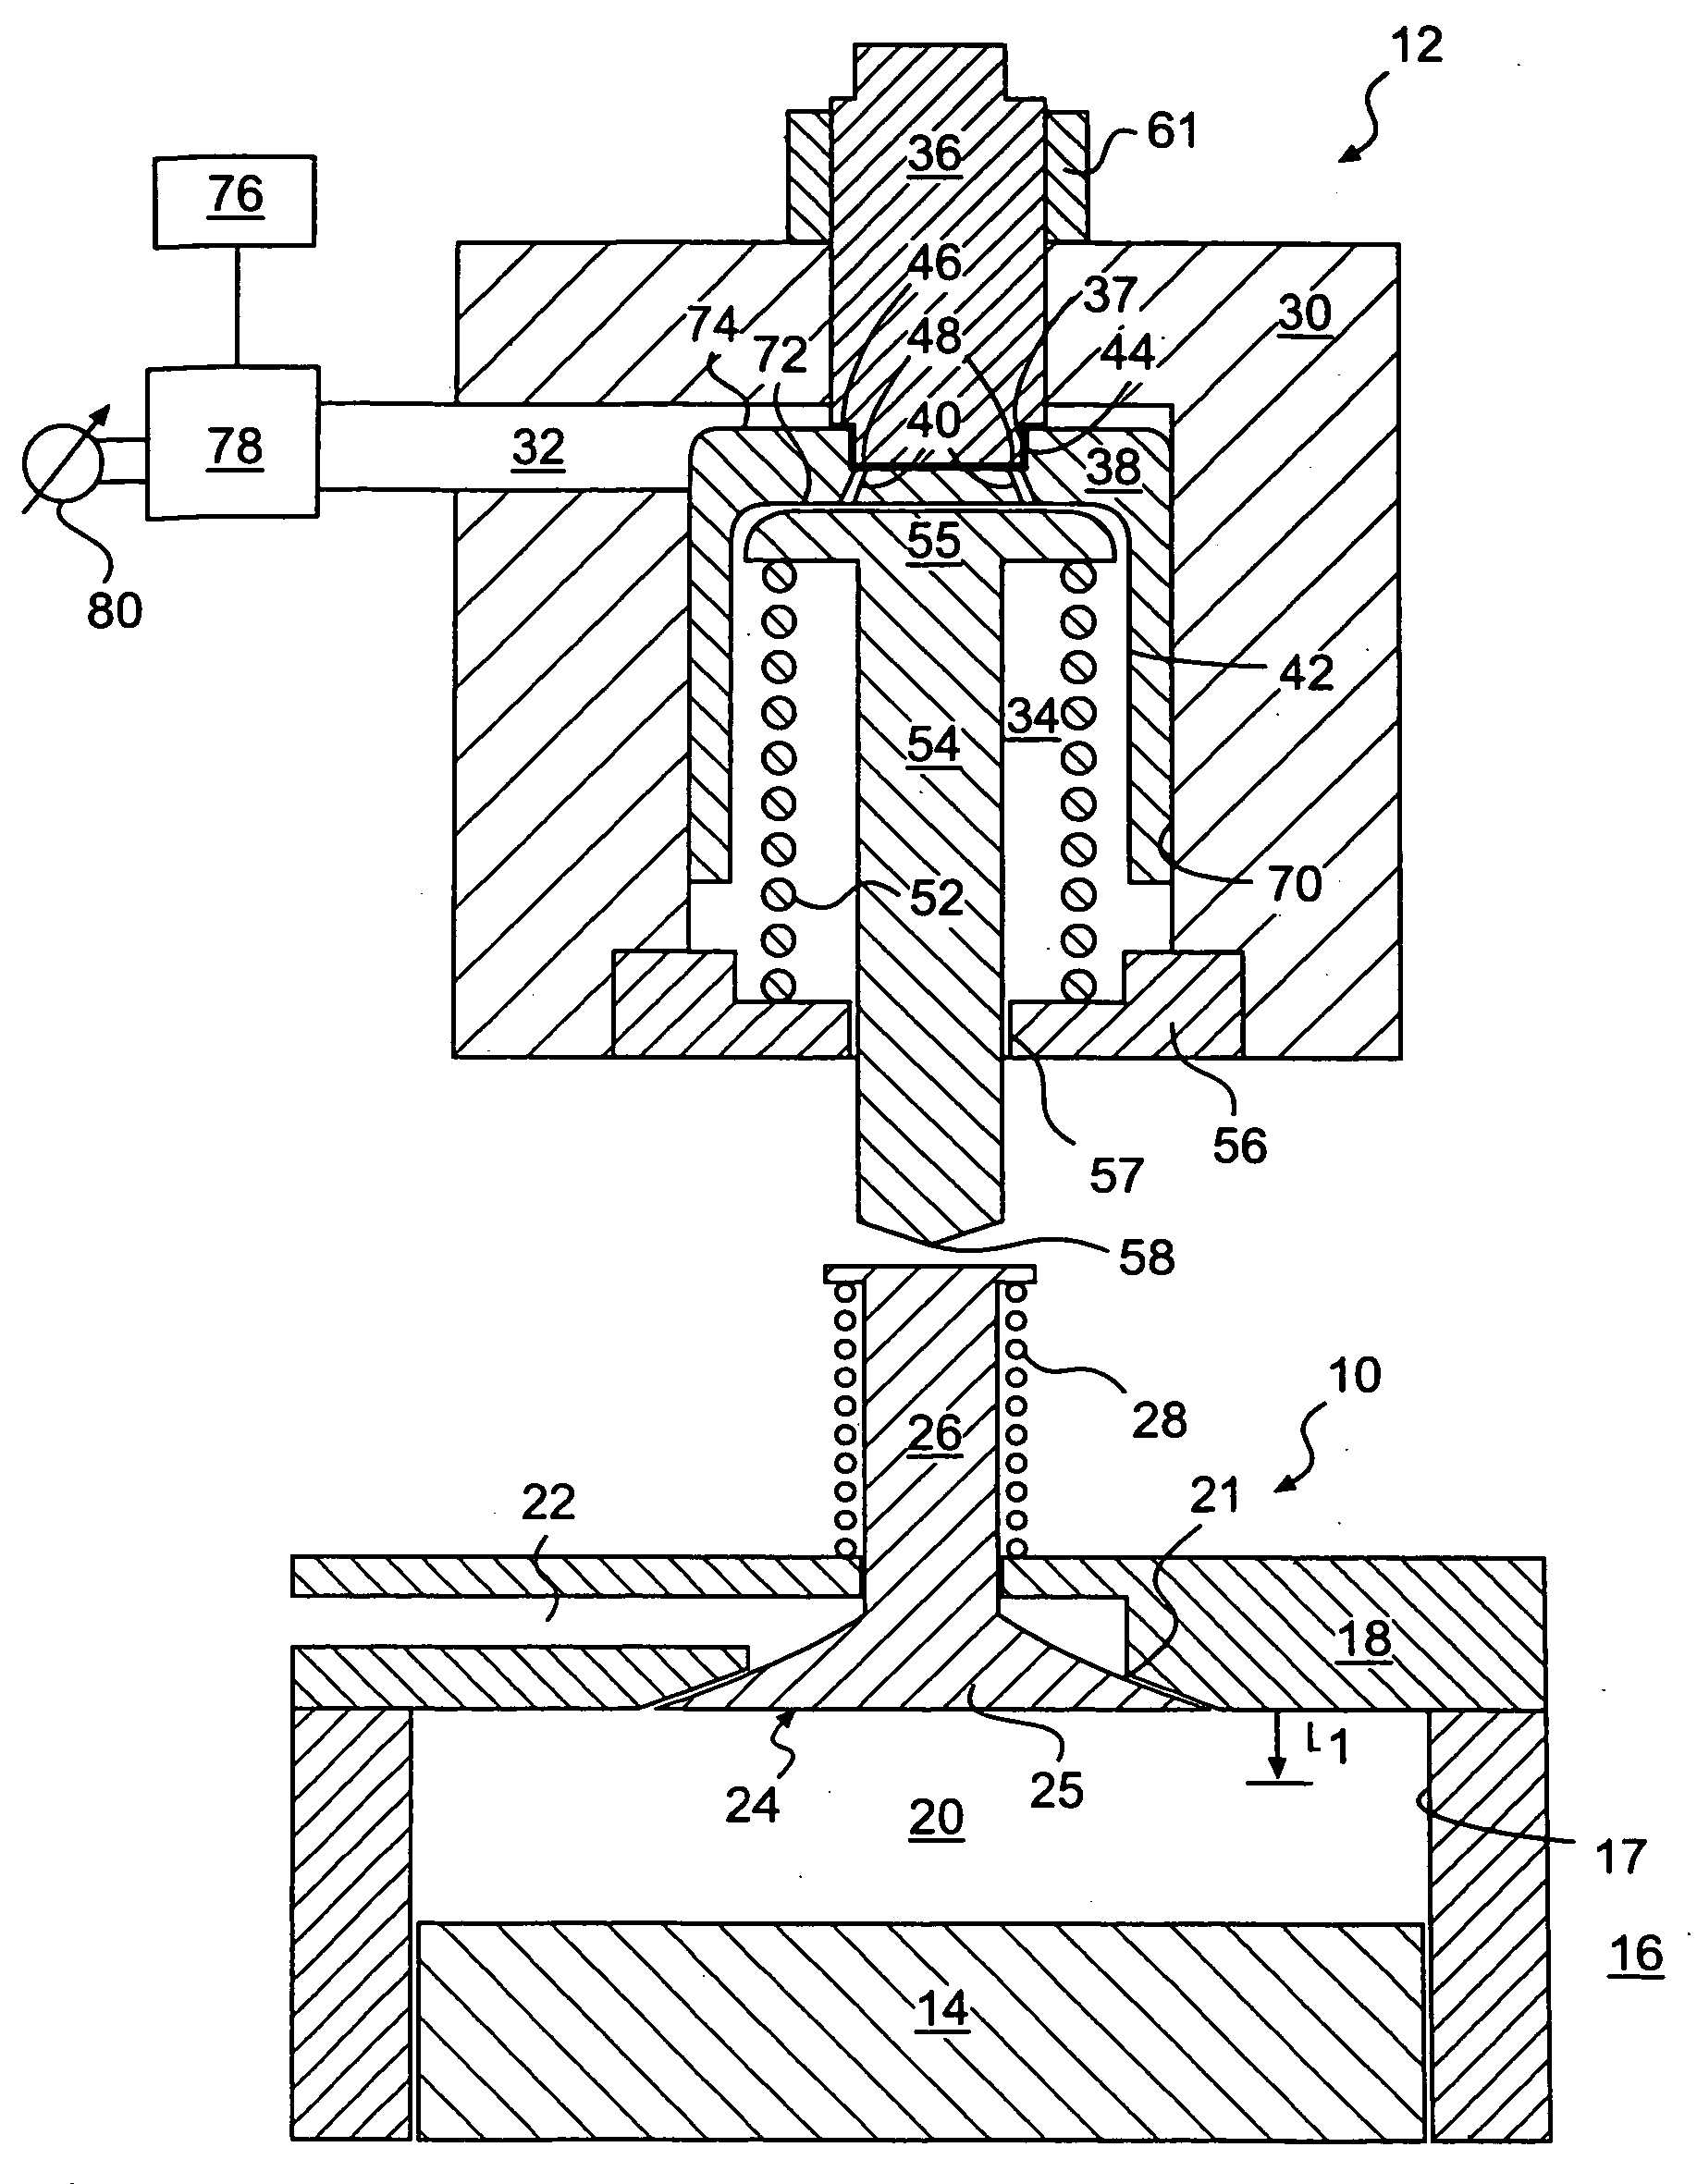 Engine valve actuator